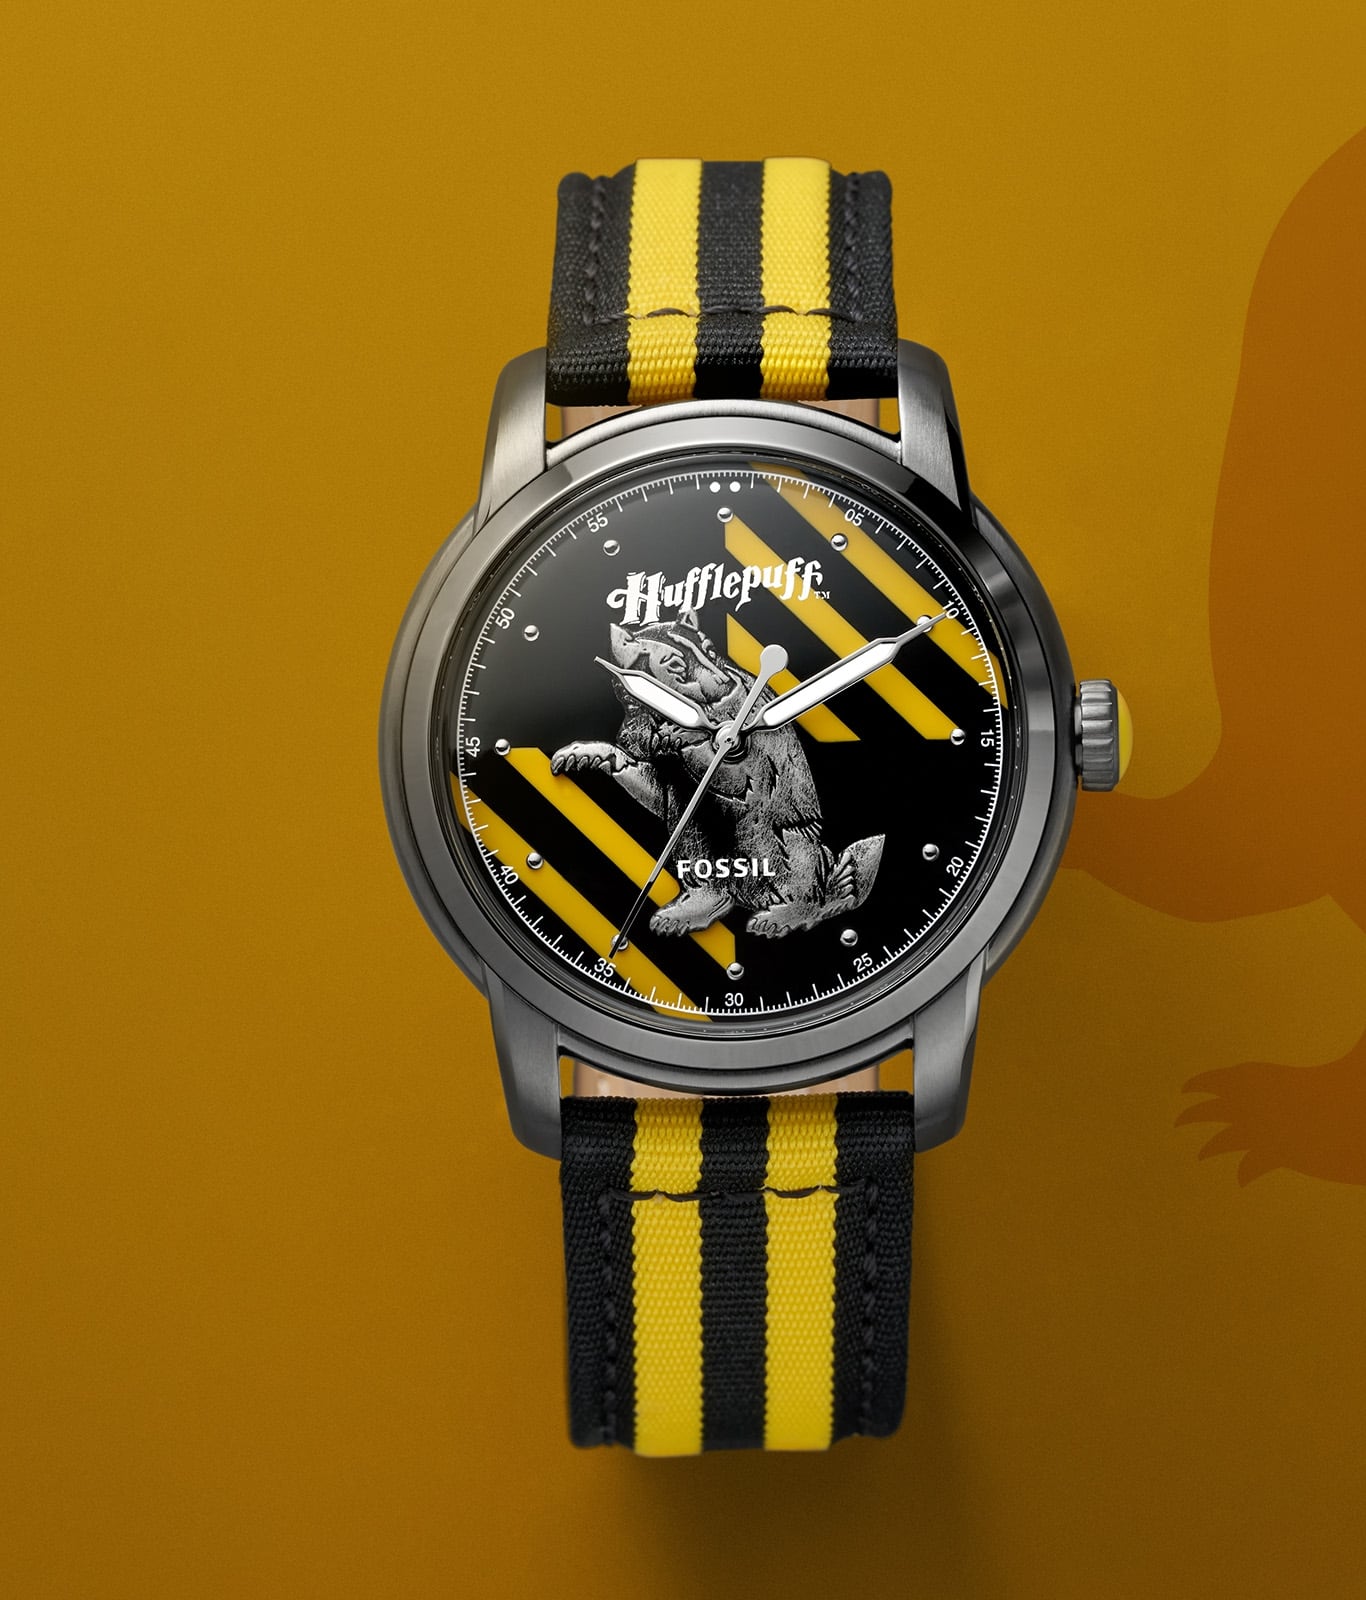 Silberfarbene Hufflepuff-Uhr mit gelb-schwarzem Band.